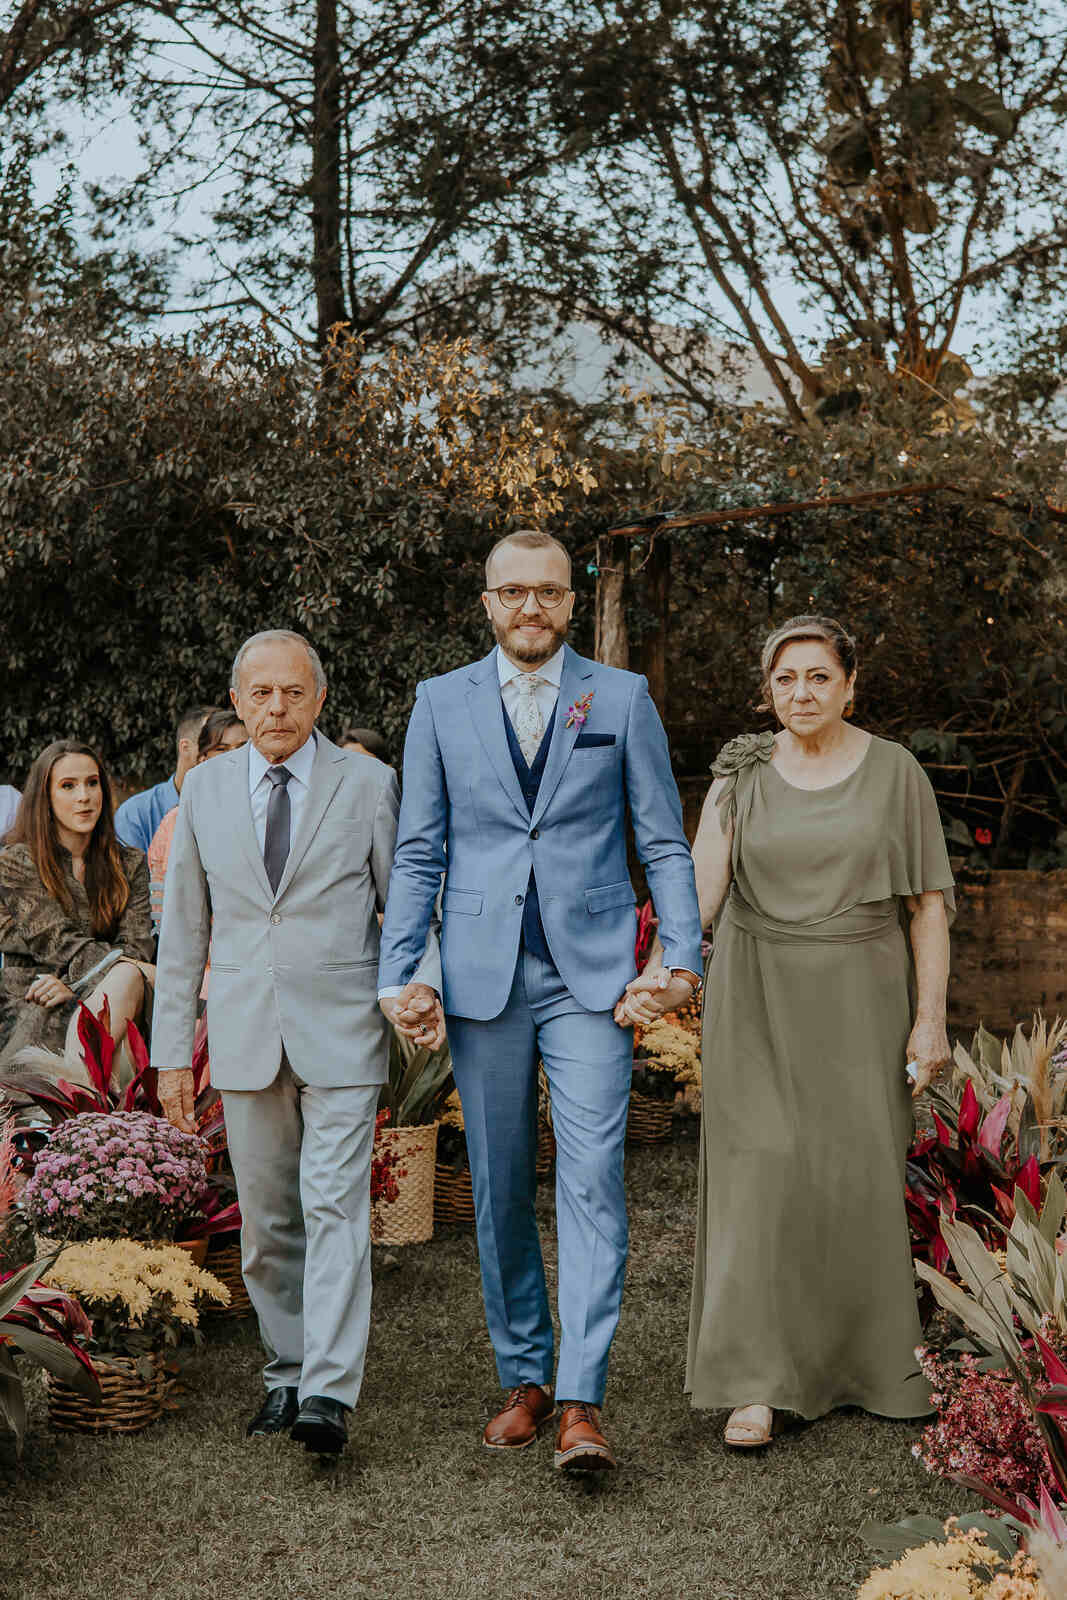 entrada do noivo com terno azul claro ao lado do pai com tenro cinza claro e mãe com vestido verde oliva